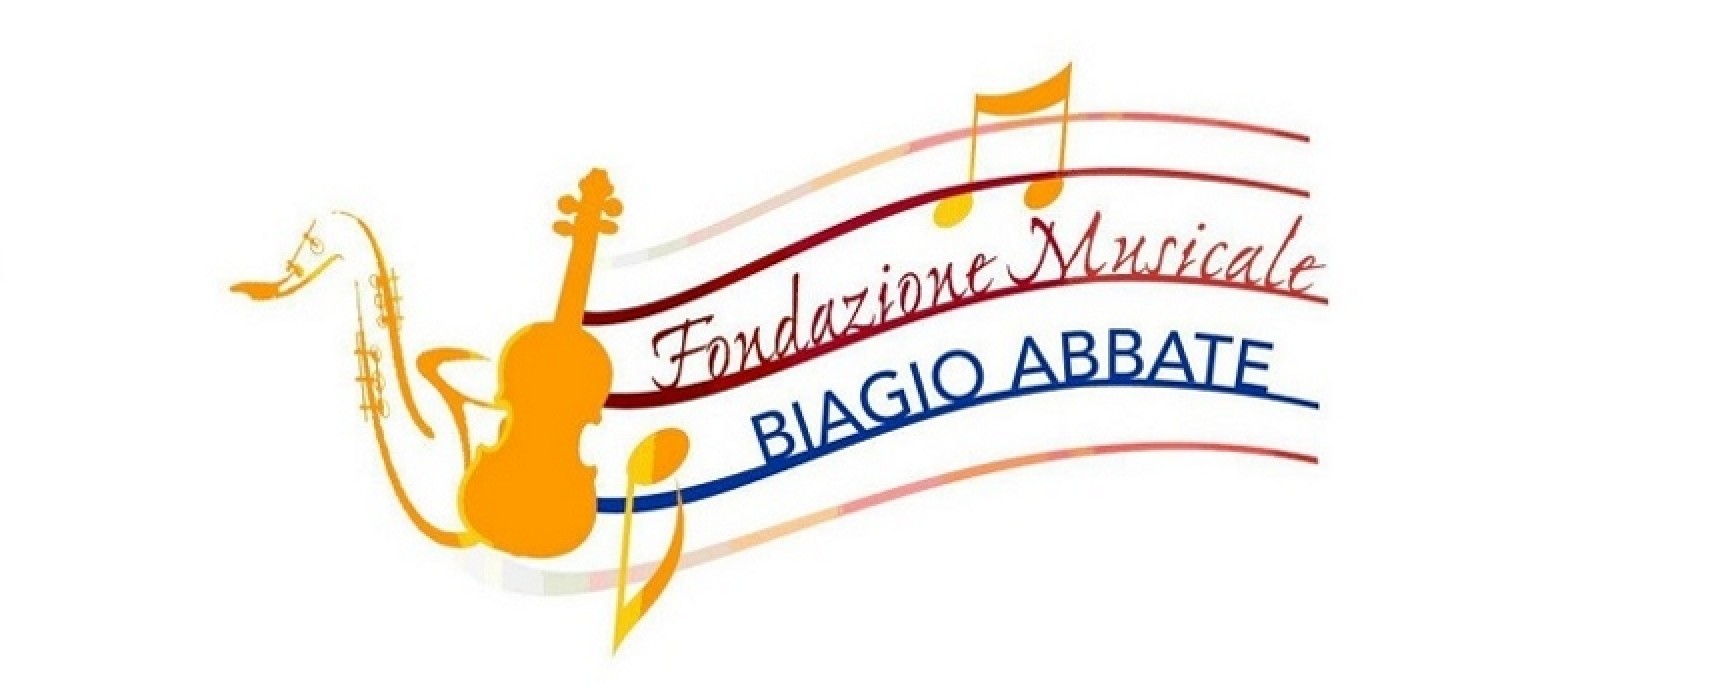 Fondazione musicale “Biagio Abbate”, stasera il Concerto dell’Epifania al Garibaldi